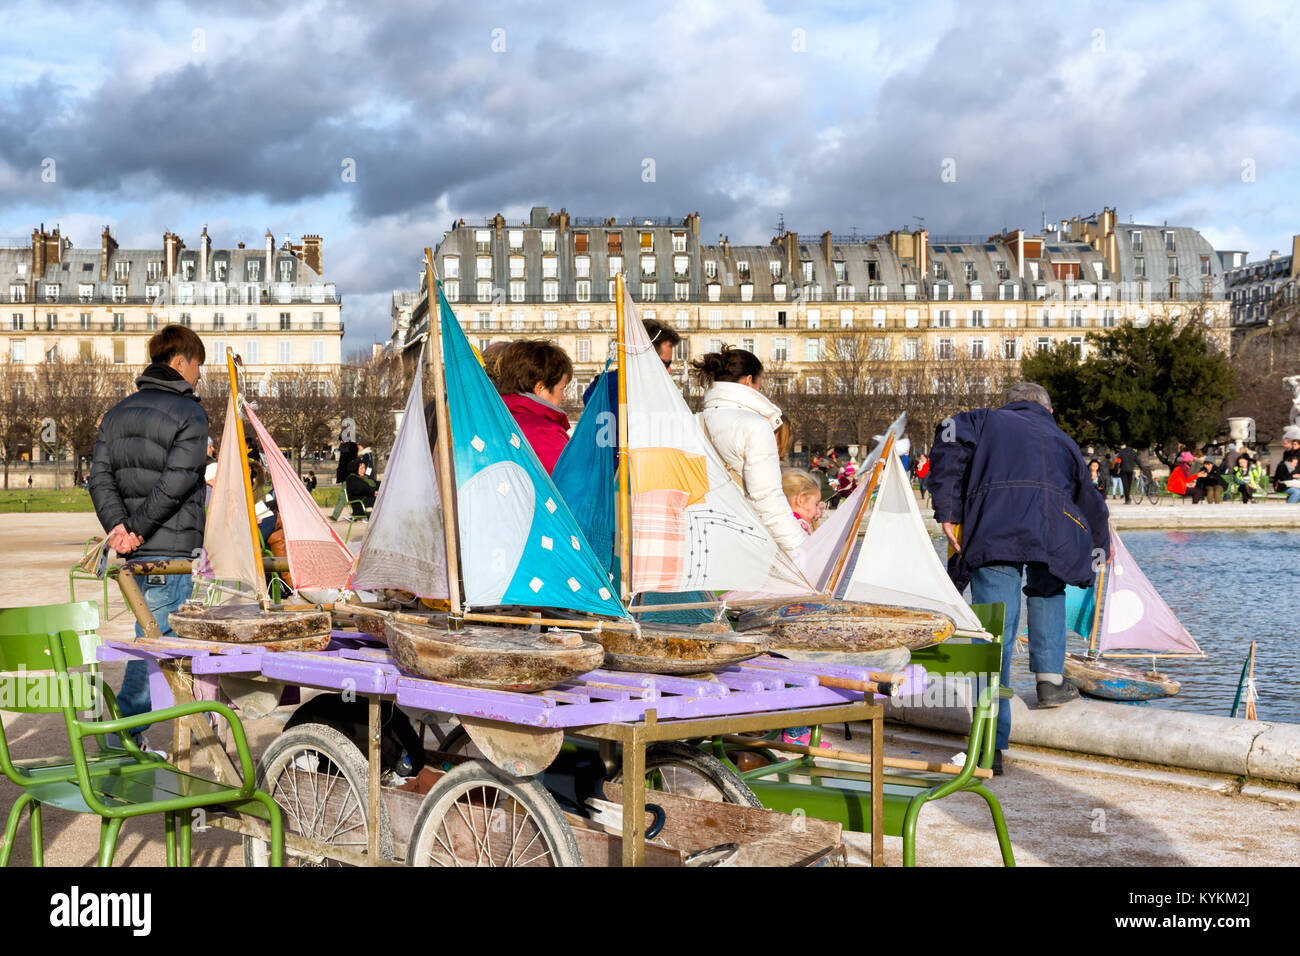 PARIS - Jan 2, 2014: Modell Segelboote zu mieten am See im Jardin des Tuileries. Segeln die Boote aus Holz ist eine beliebte Tradition für Pariser Chil Stockfoto